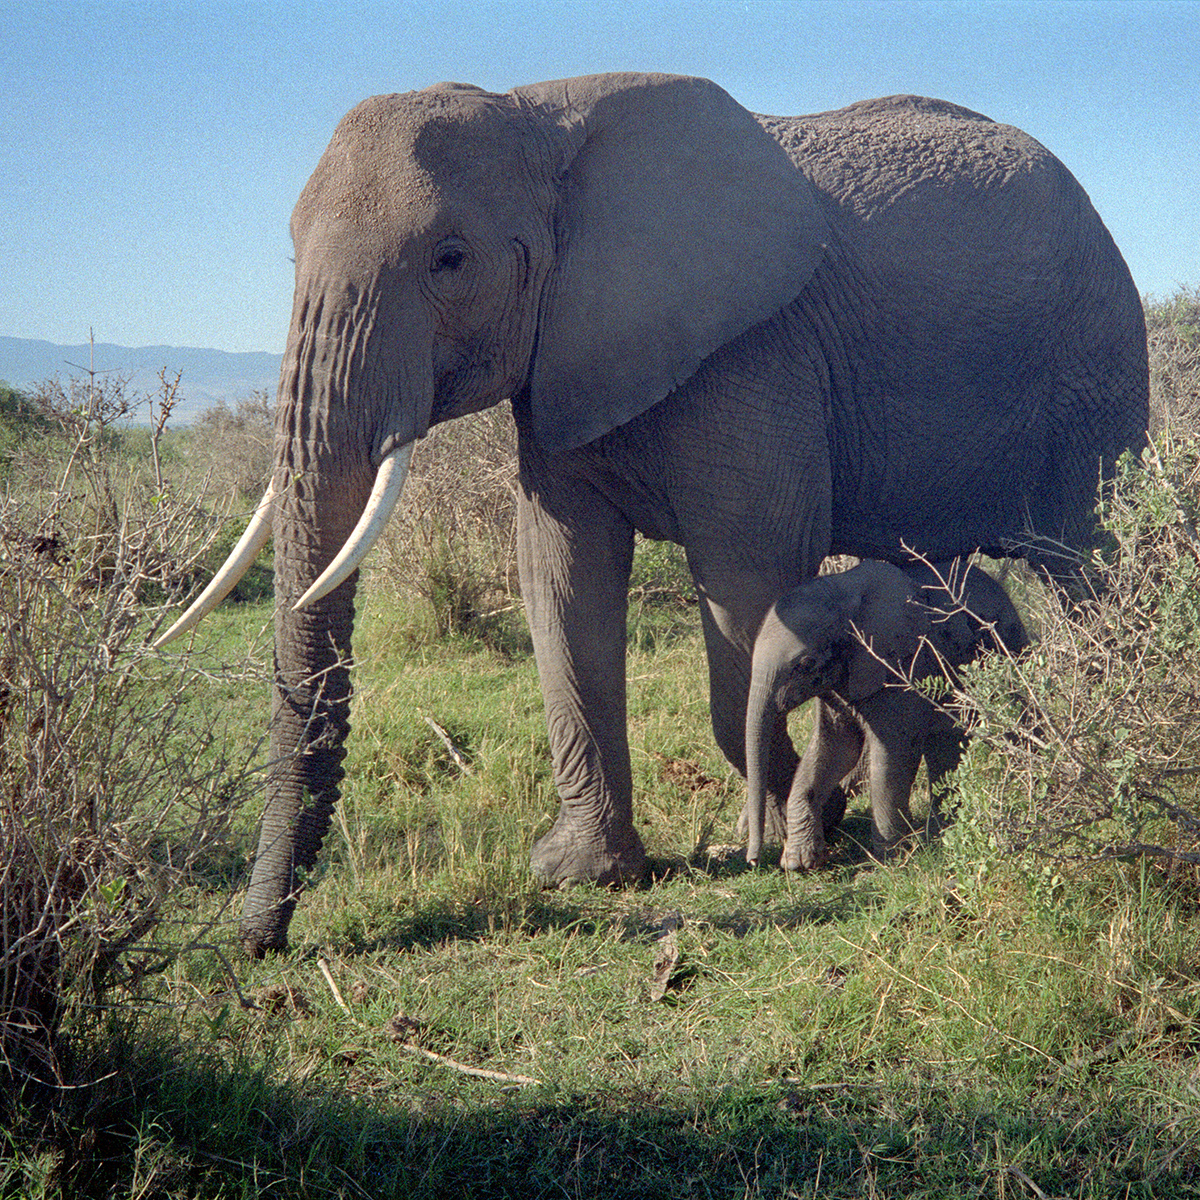 Elephant calf with the mama elephant